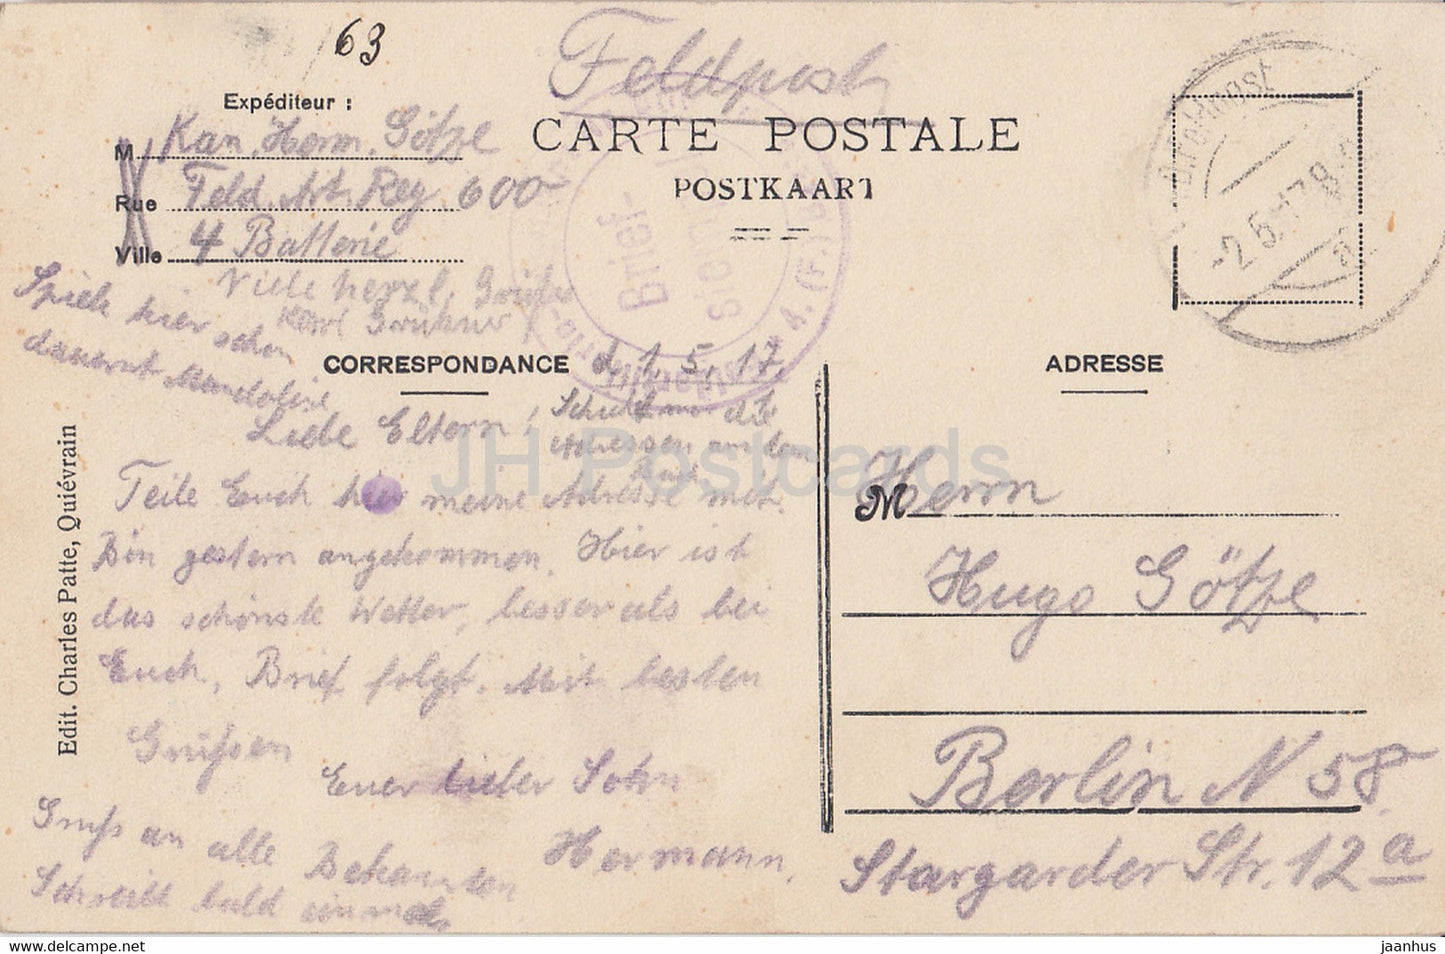 Montignies sur Roc - Le bas des Rocs - Feldpost - carte postale ancienne - 1917 - Belgique - utilisé